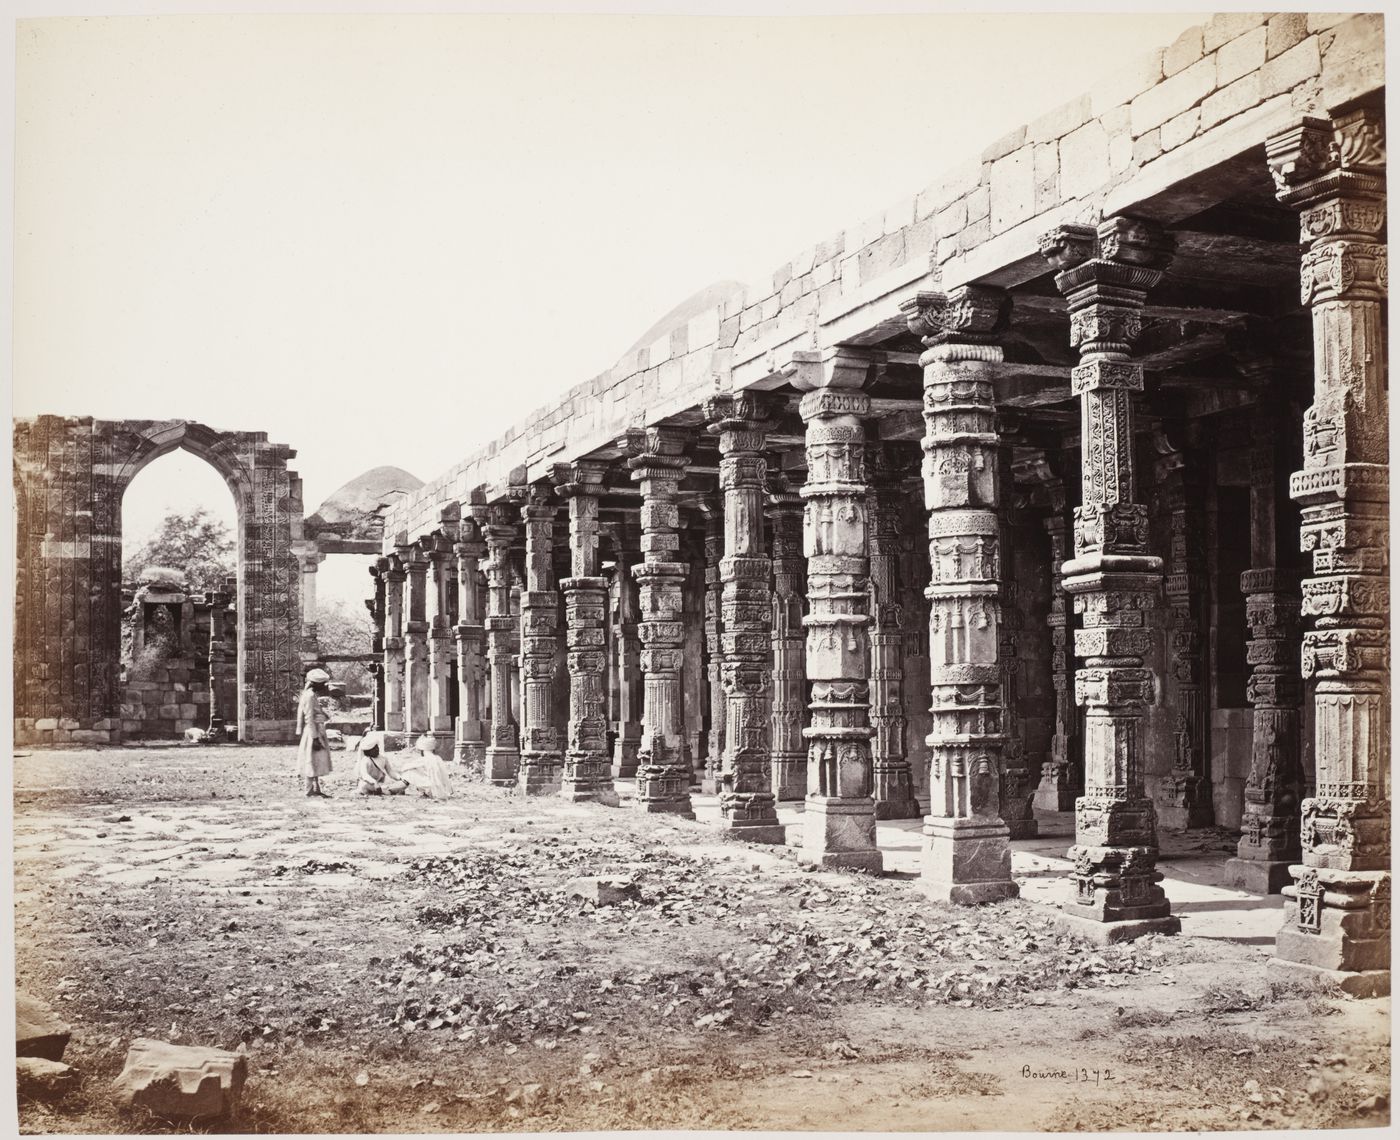 View of a colonnade, Quwwat al-Islam [Might of Islam] Mosque Complex, Delhi, India